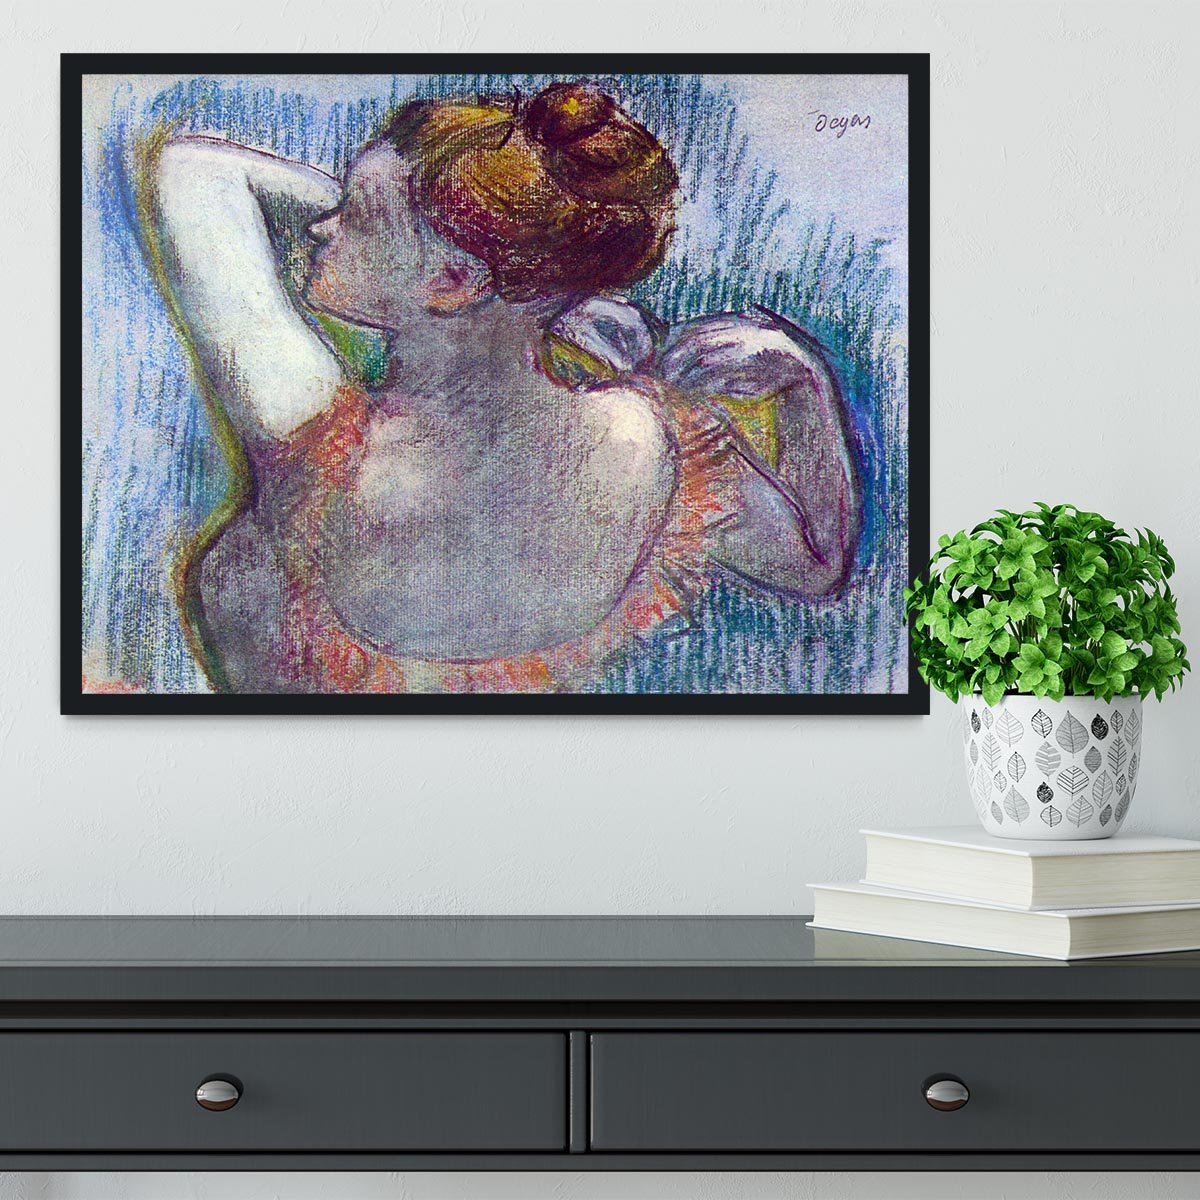 Dancer by Degas Framed Print - Canvas Art Rocks - 2